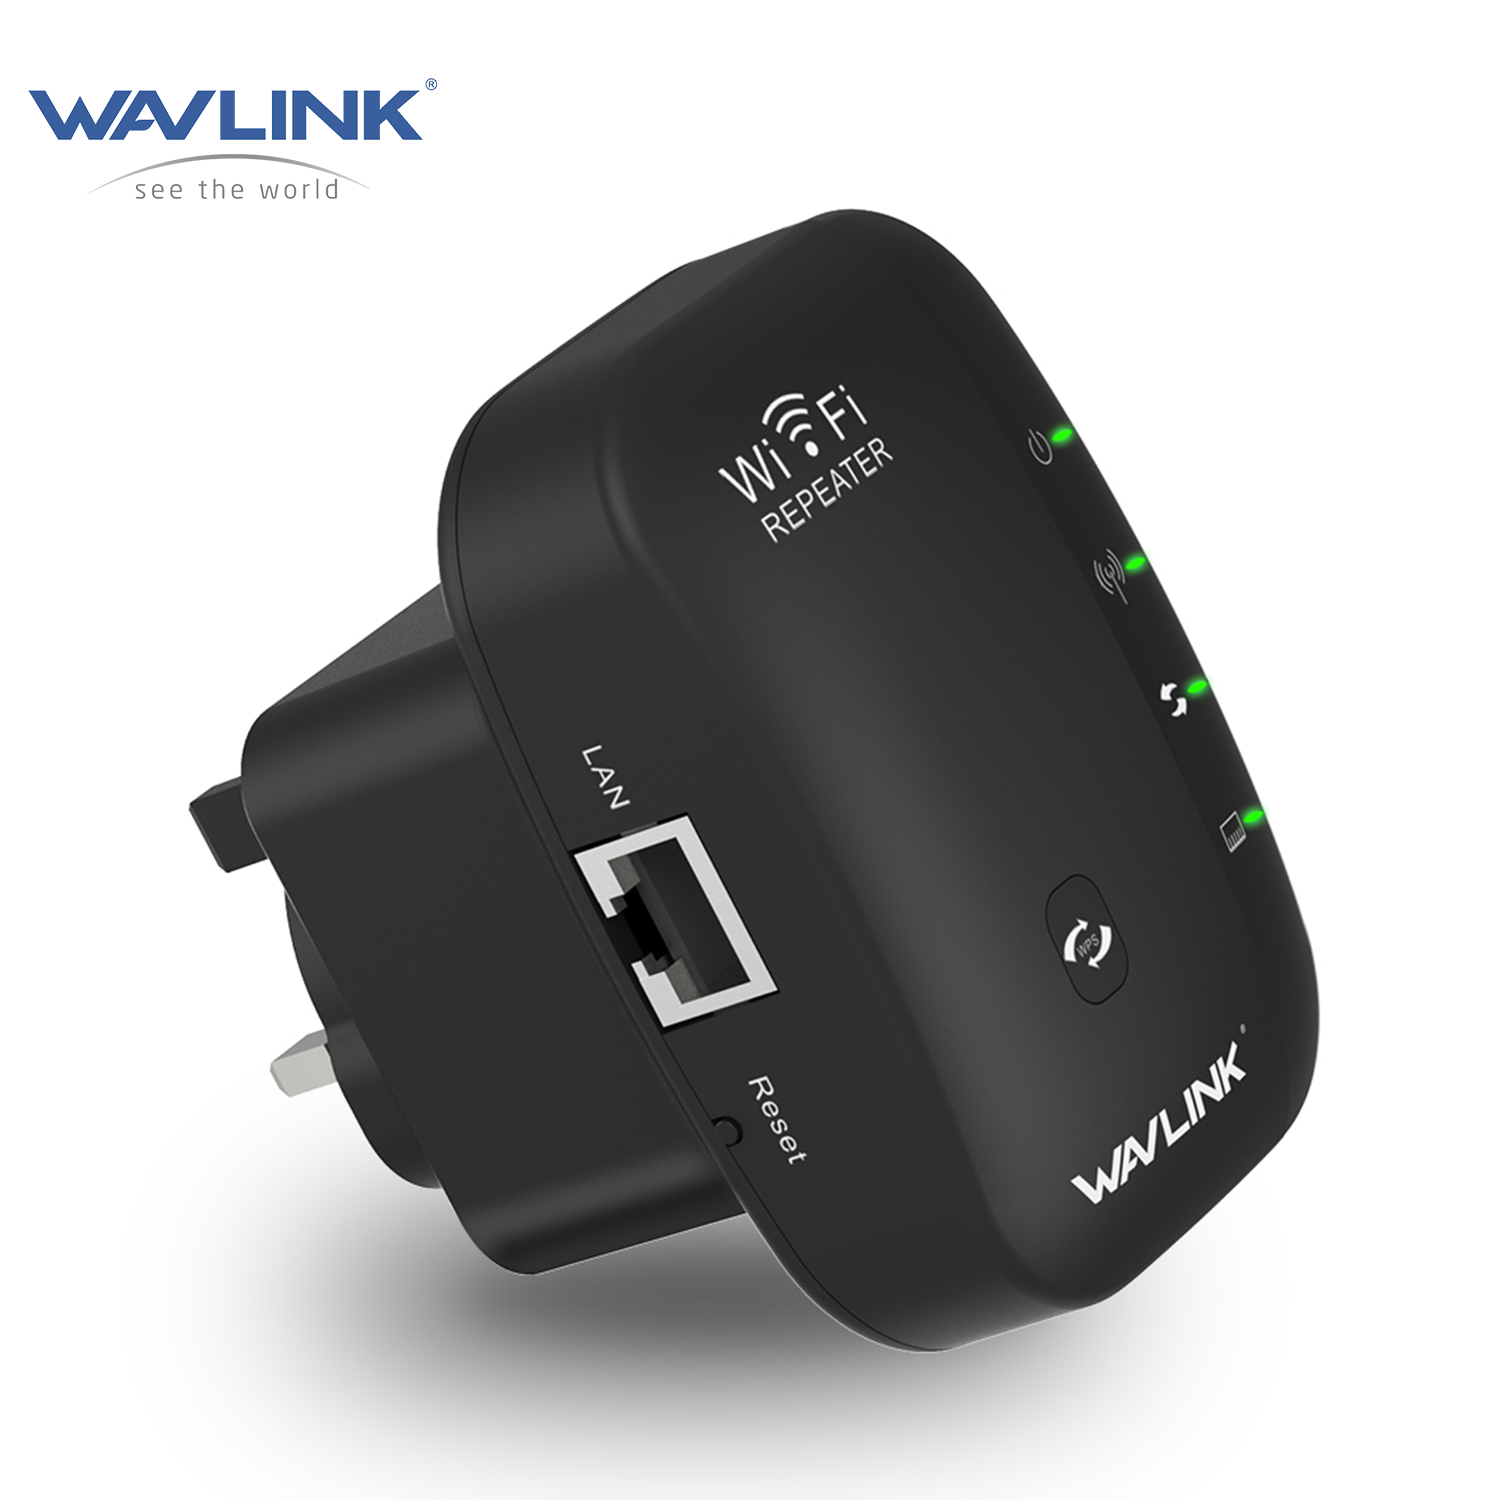 Wavlink N300 WiFi Repeater Range Extender with 3dBi Internal Antennas